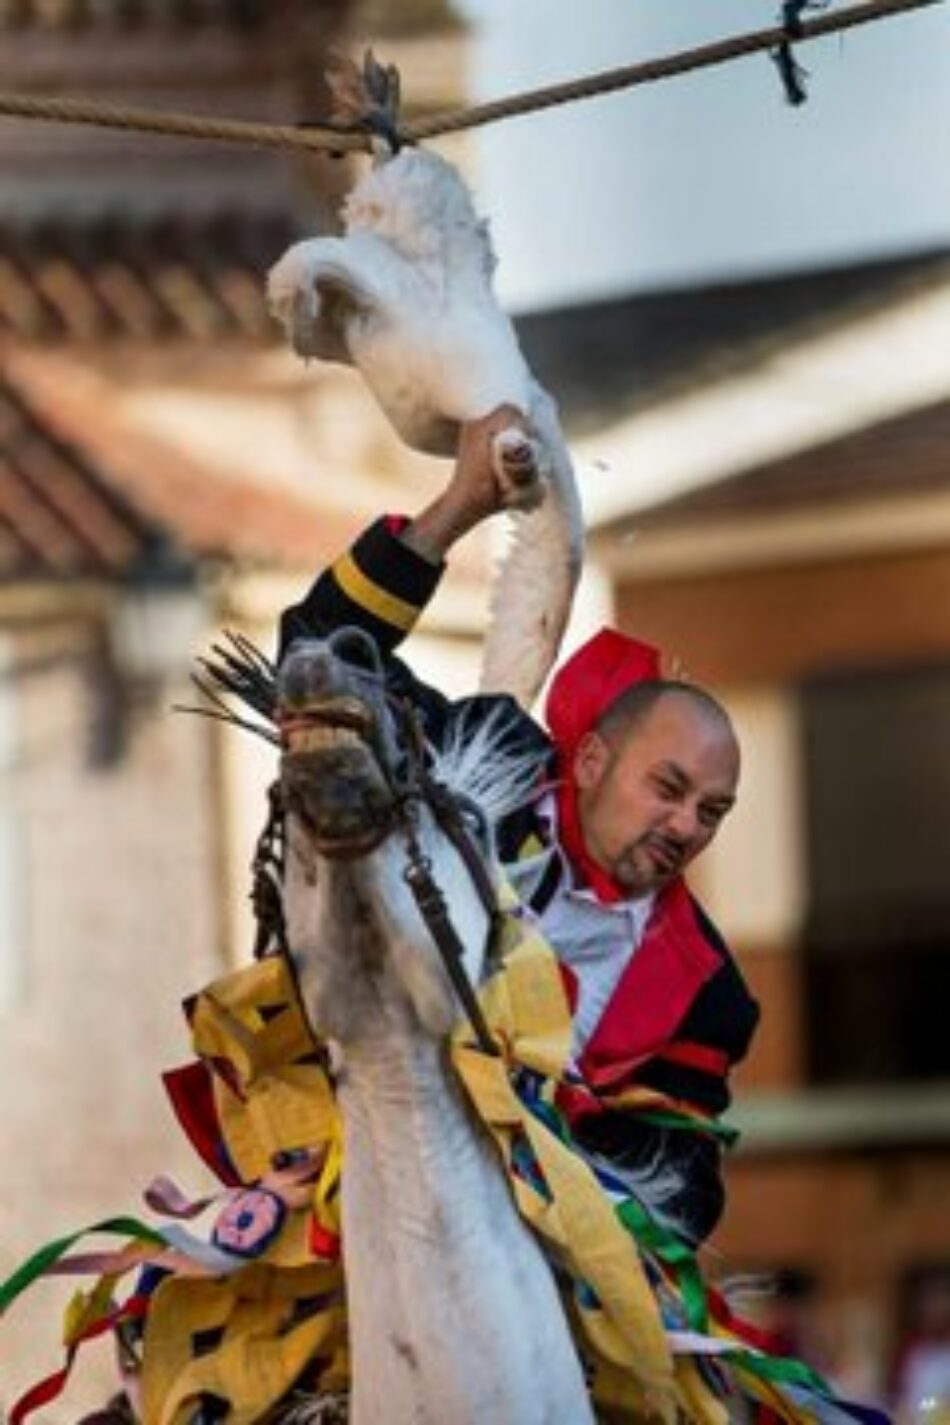 La Tortura No Es Cultura y Animal Guardians denuncian la “diversión” de decapitar gansos colgados boca abajo en Carpio de Tajo